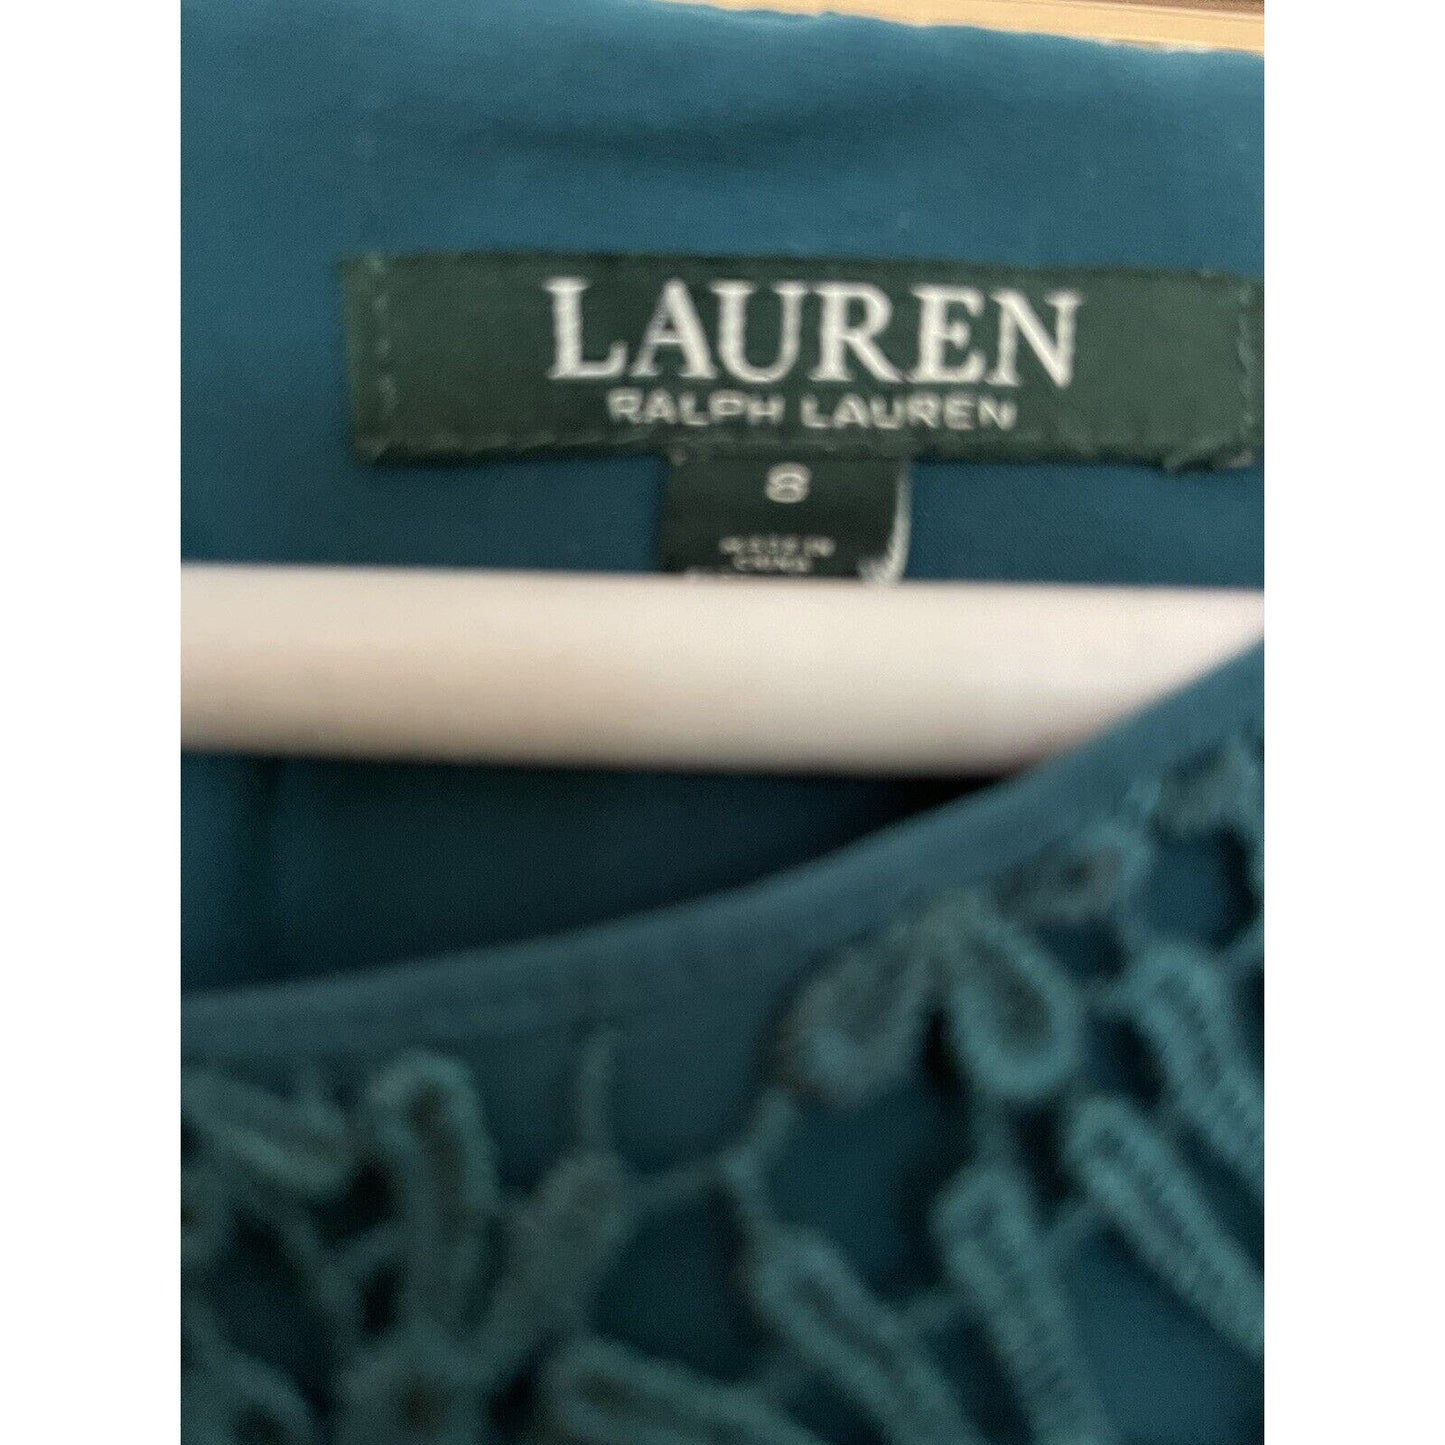 Lauren Ralph Lauren Woman Lattice Dress Size 8 Green/Blue